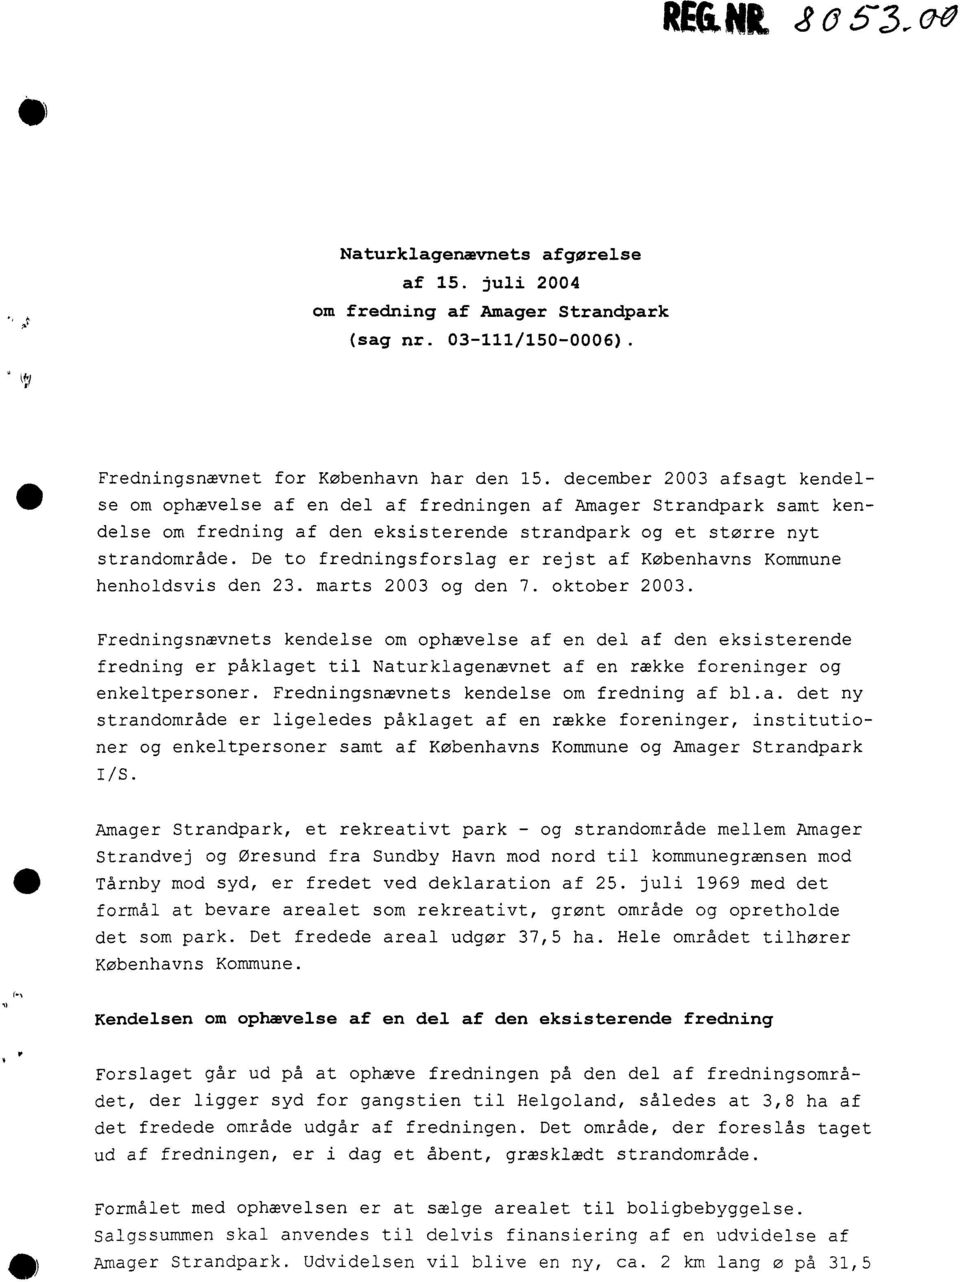 De to fredningsforslag er rejst af Københavns Kommune henholdsvis den 23. marts 2003 og den 7. oktober 2003.